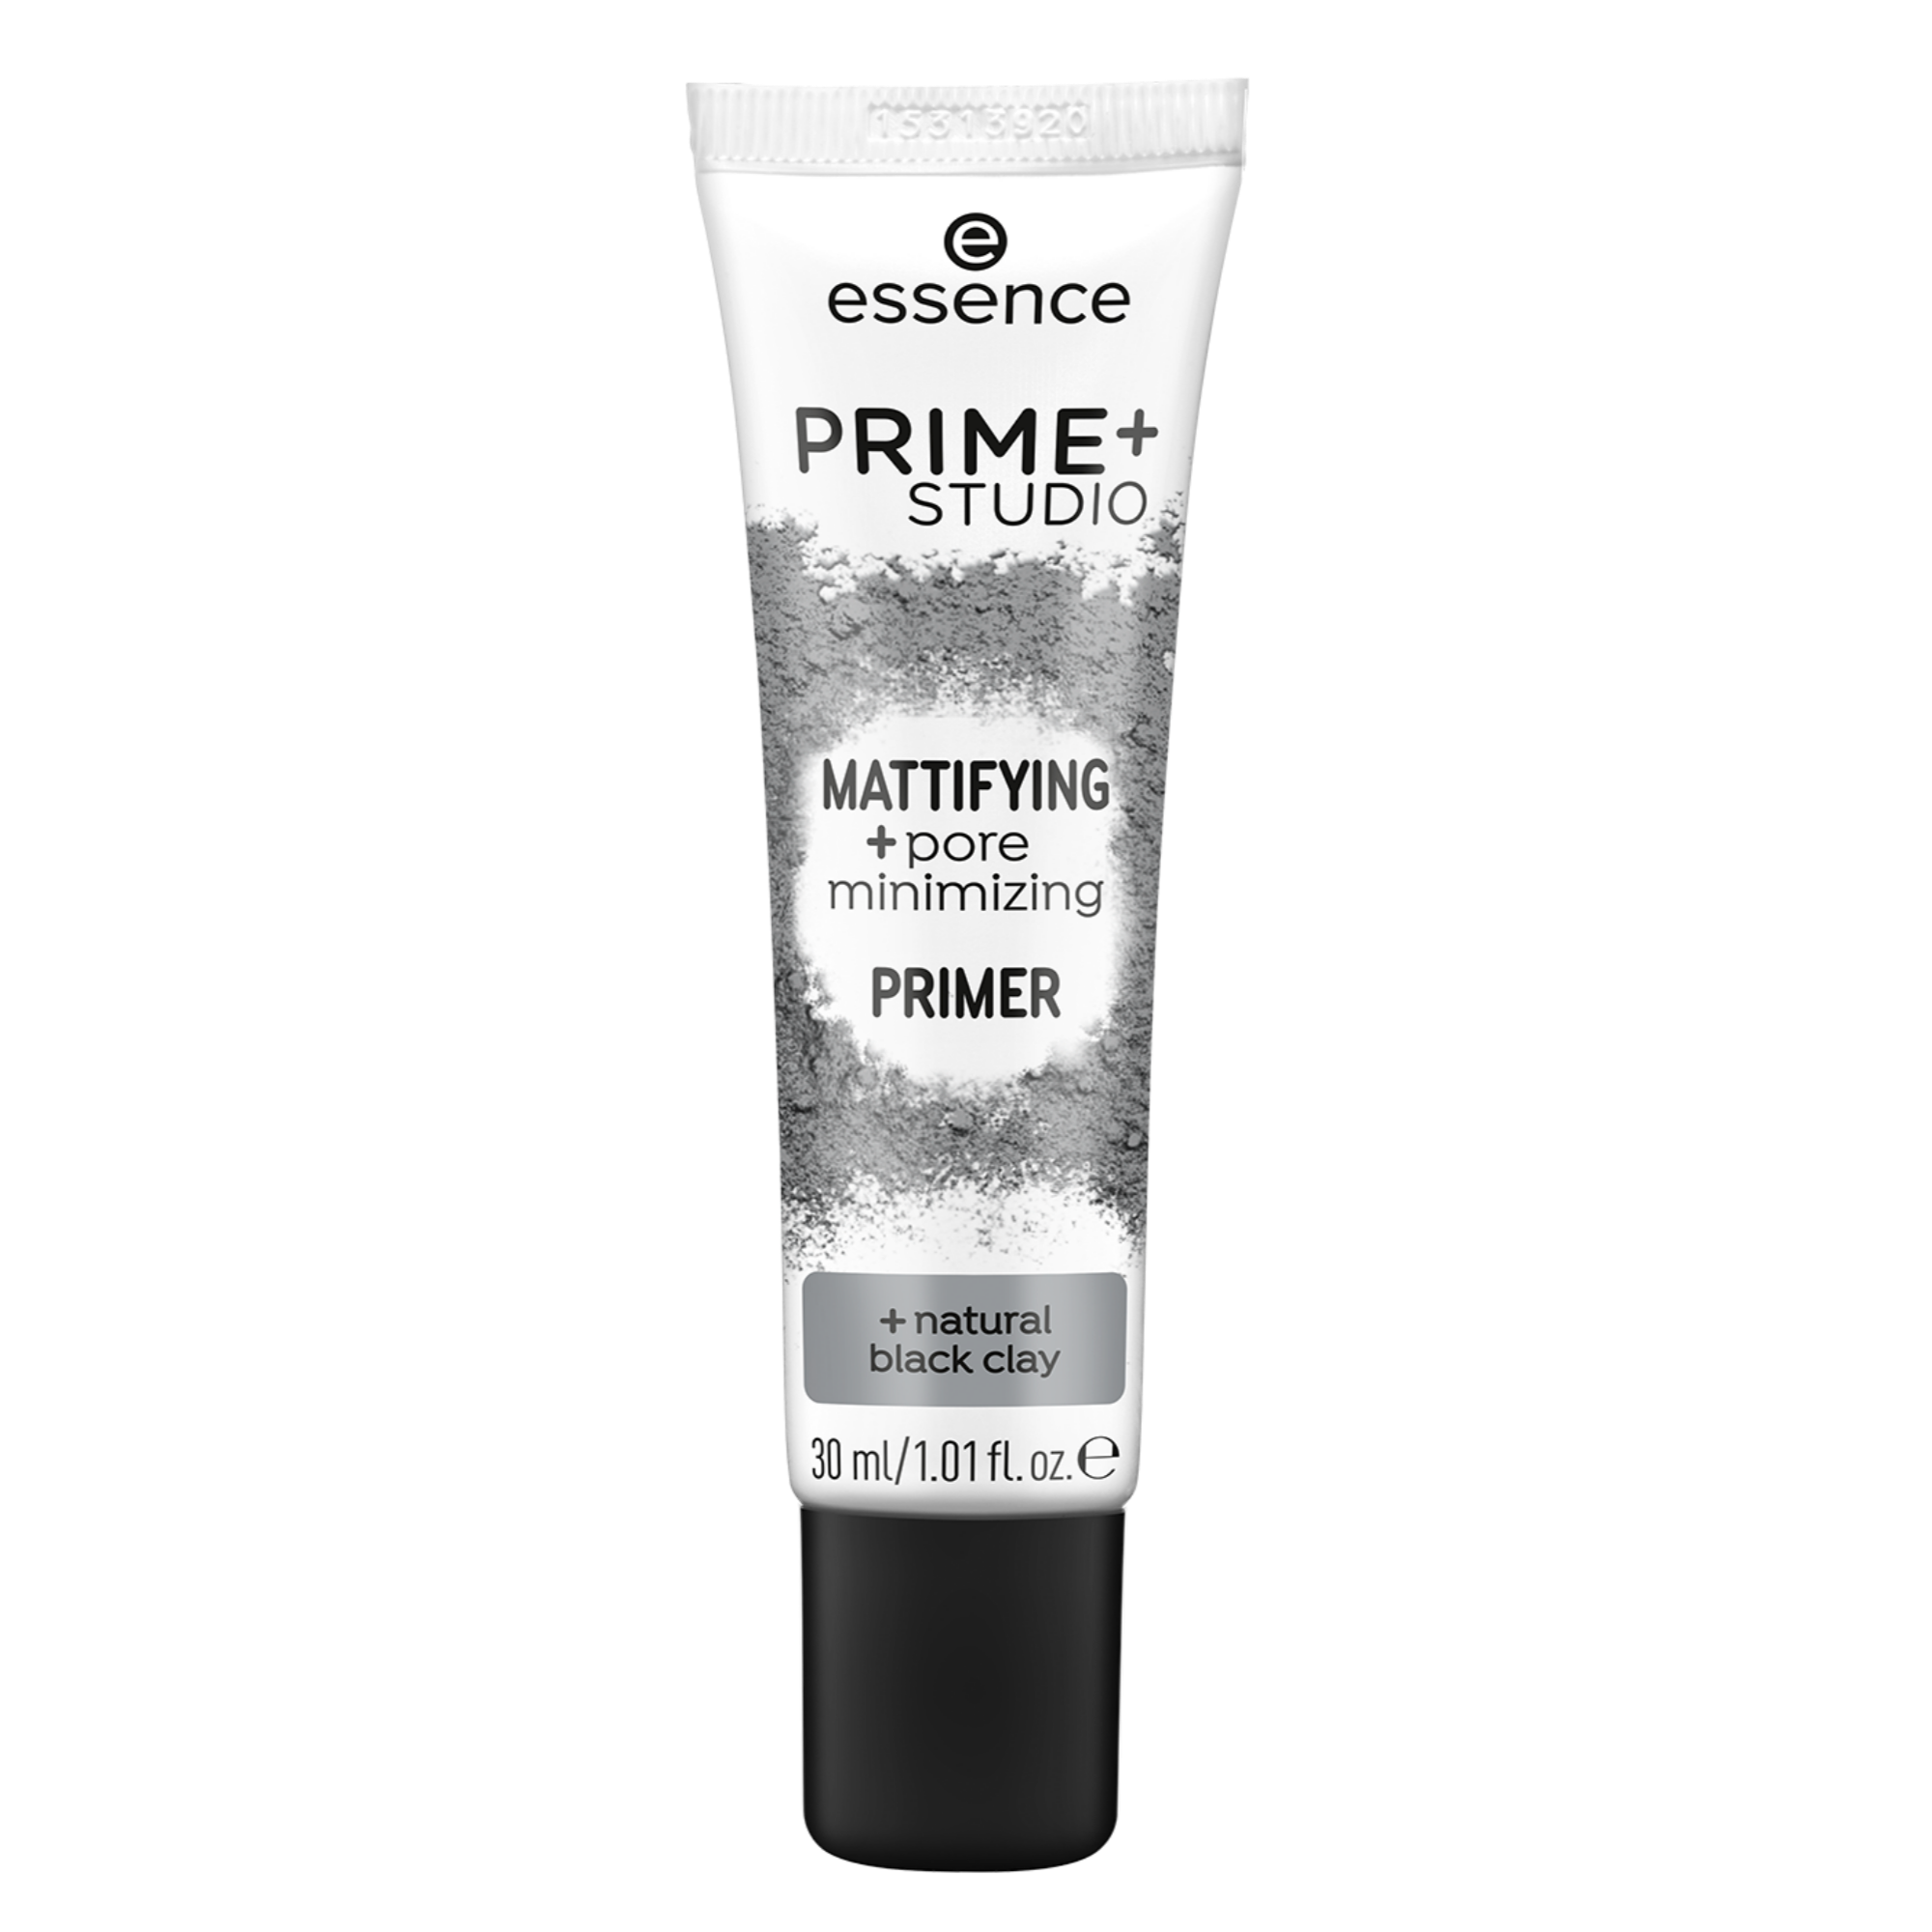 PRIME+ STUDIO MATTIFYING +pore minimizing PRIMER